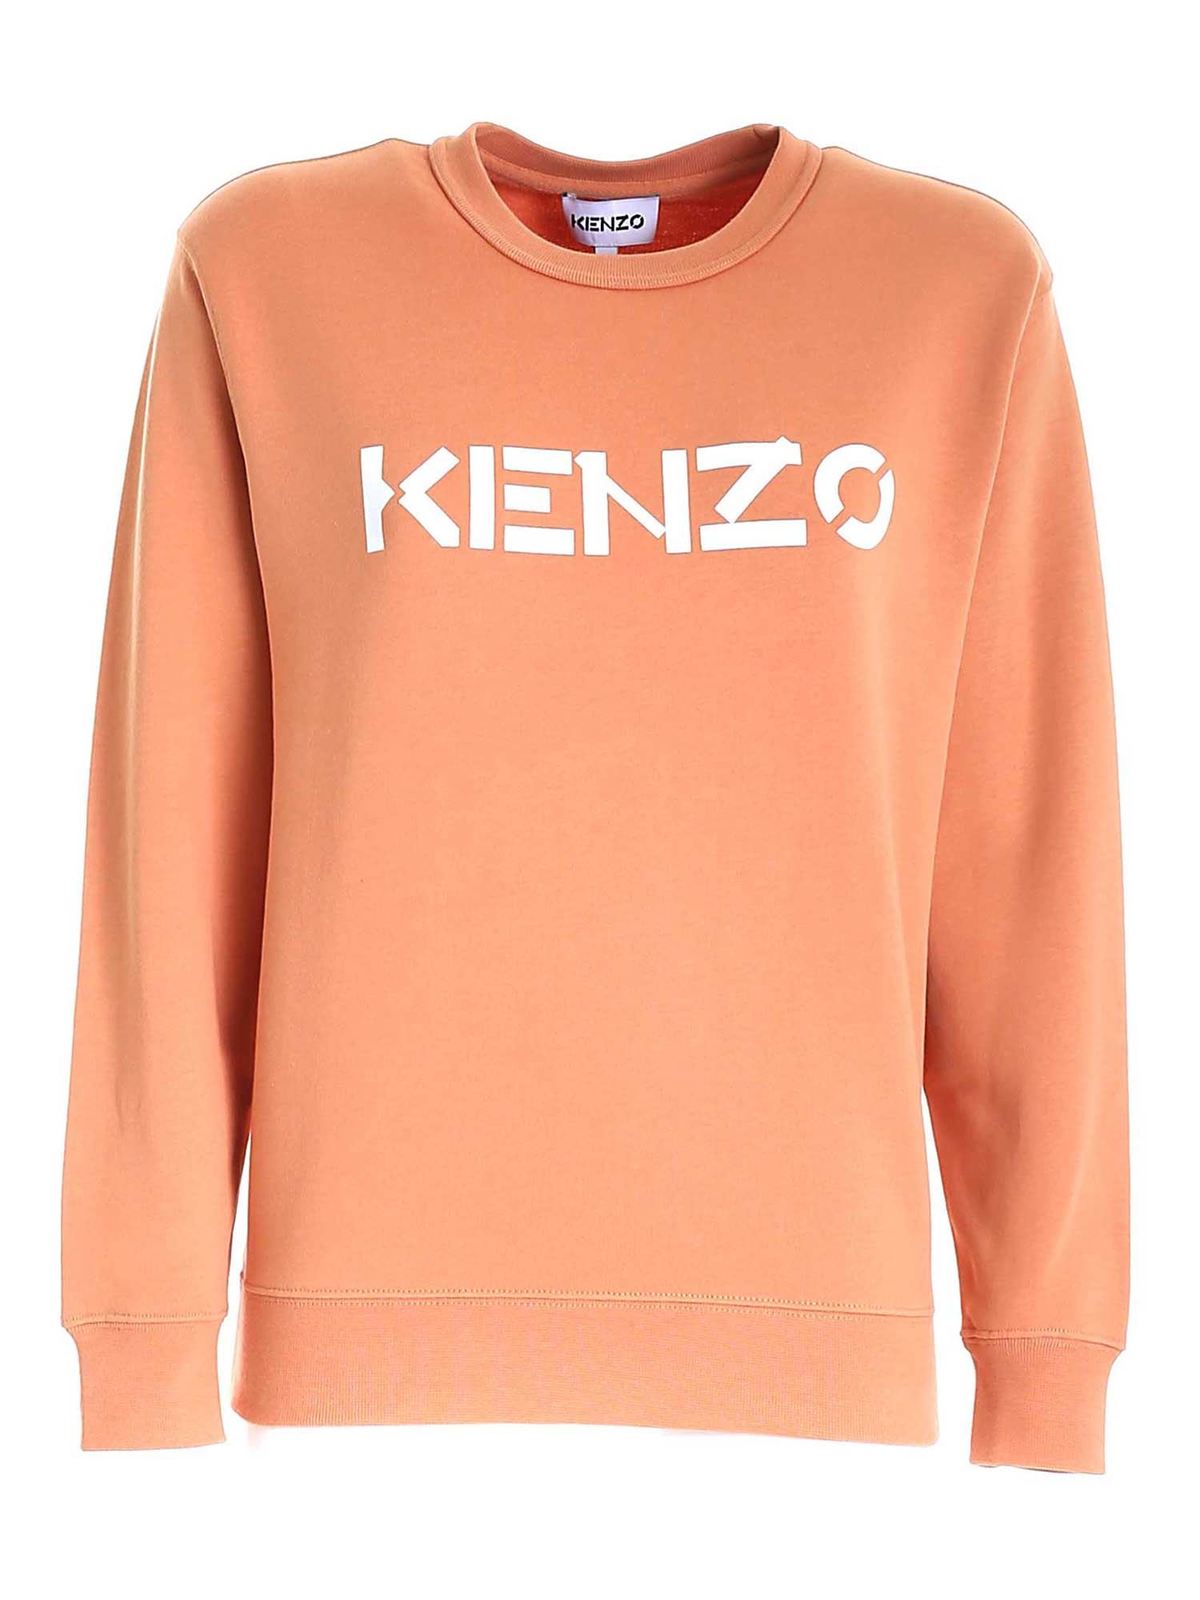 Kenzo スウェットシャツ セーター オレンジ スウェット セーター Fa62sw14md